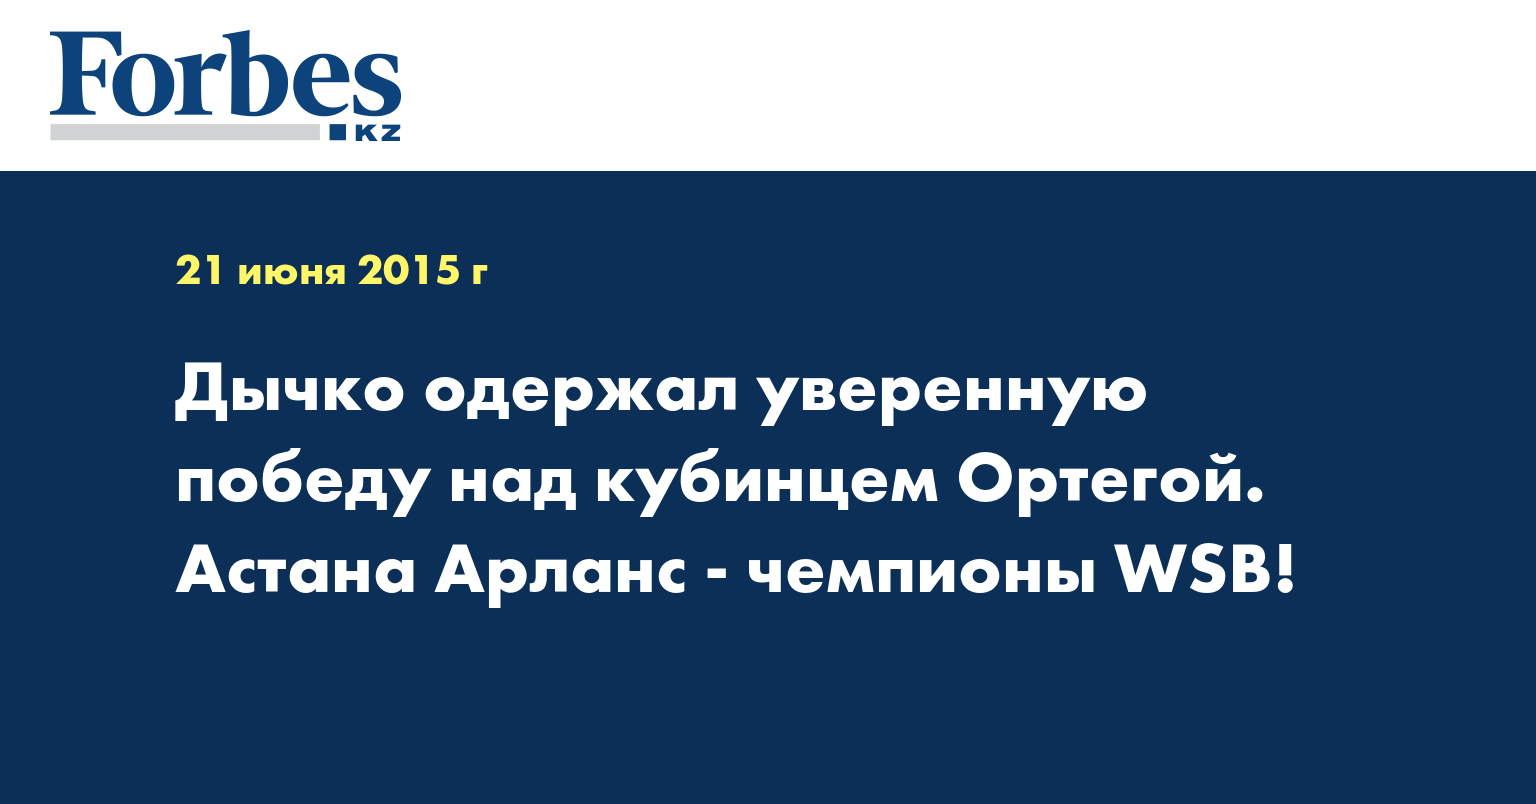 Дычко одержал уверенную победу над кубинцем Ортегой. Астана Арланс - чемпионы WSB!